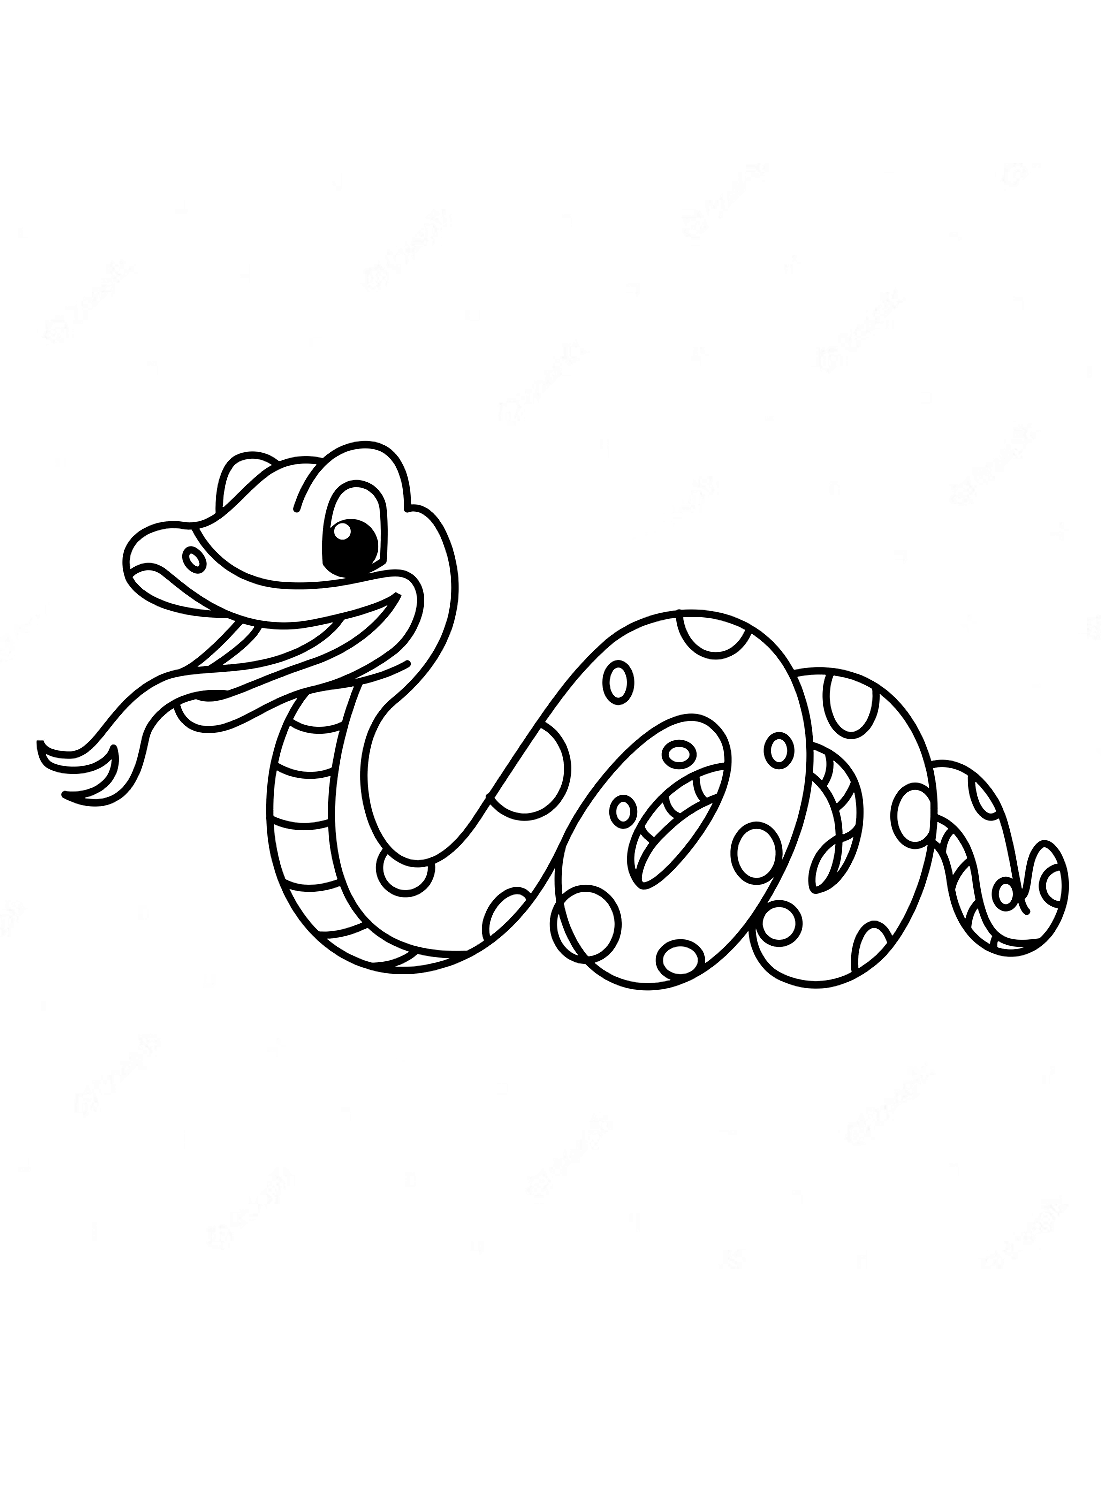 Desenho de uma cobra fofa para colorir